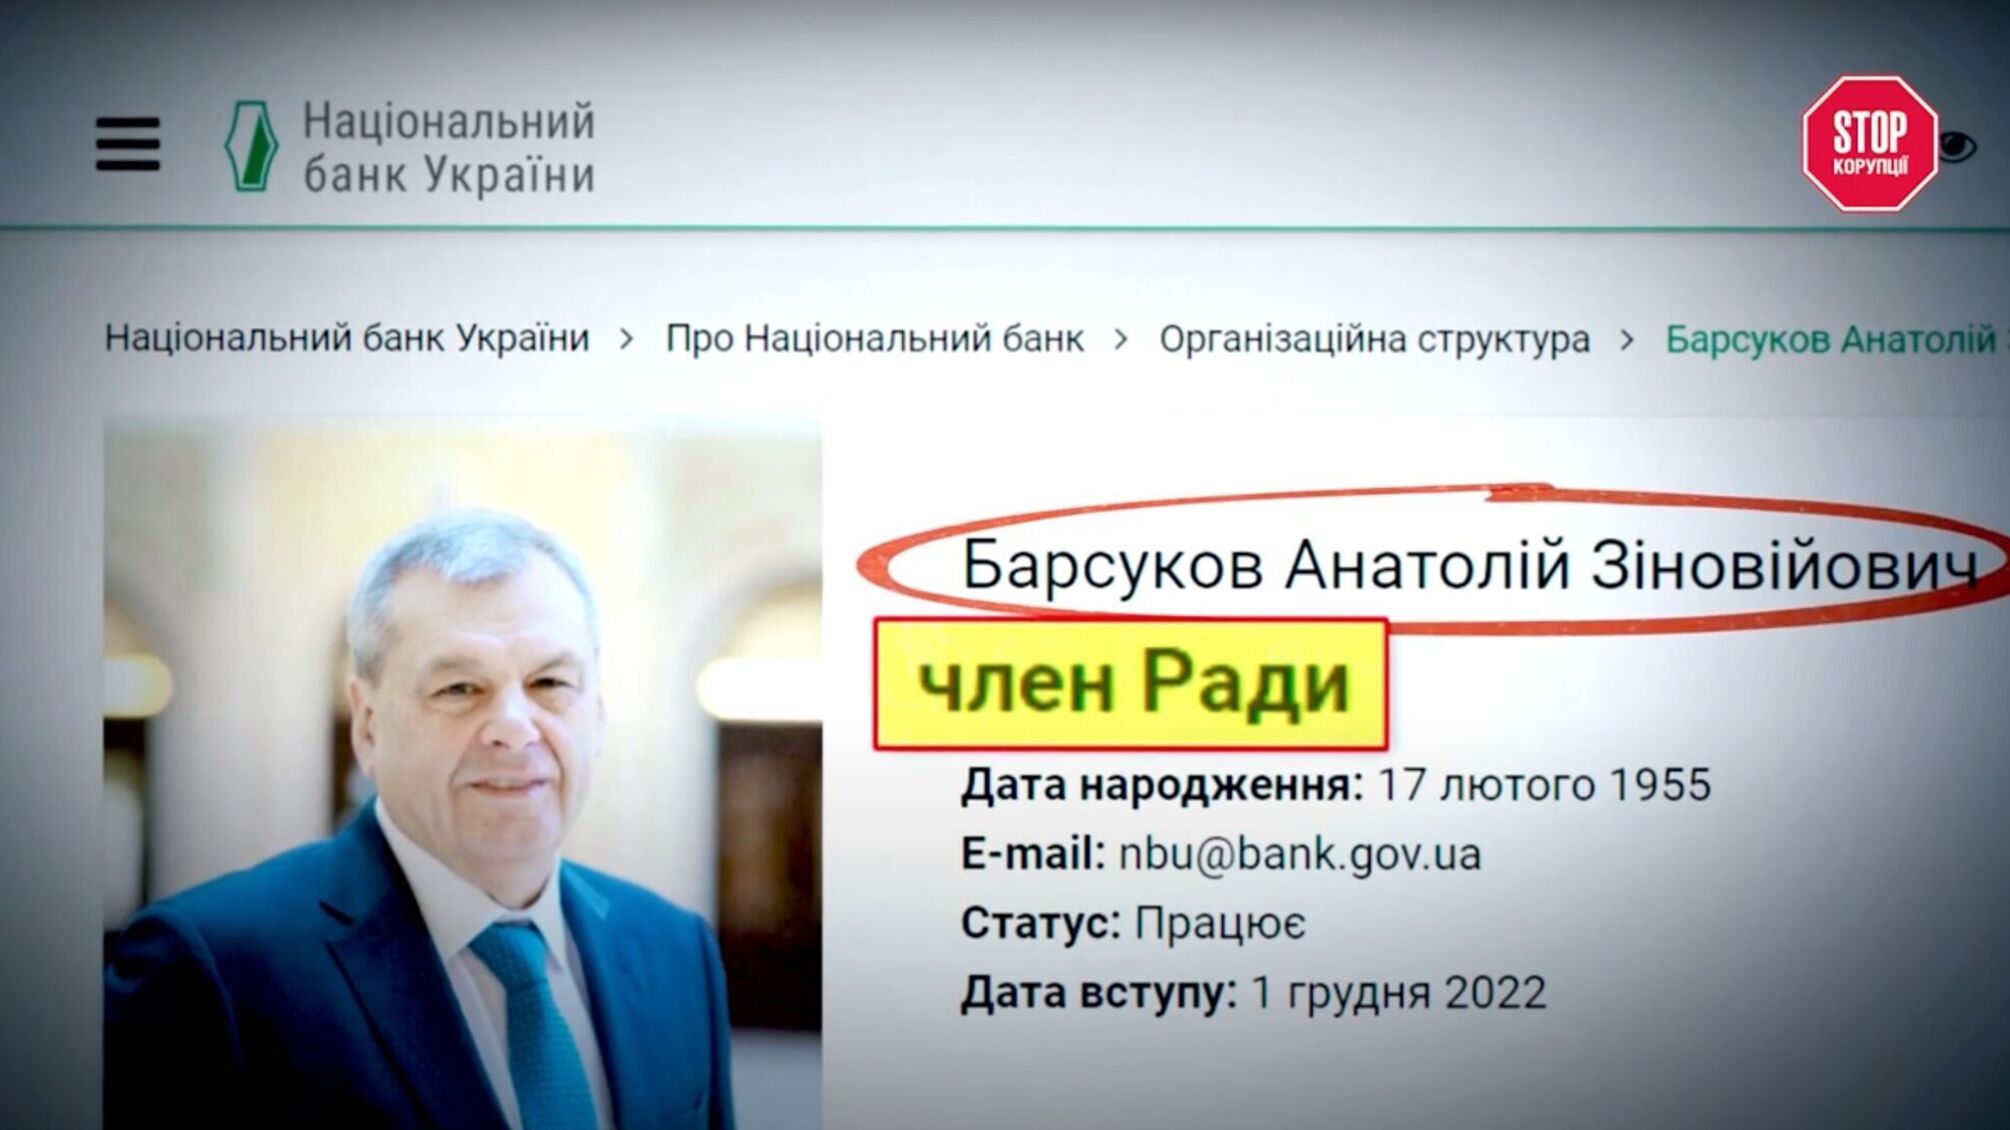 Из подозреваемых – в нацбанкиры: как фигурант дела о 15 млн Барсуков стал членом Совета НБУ?